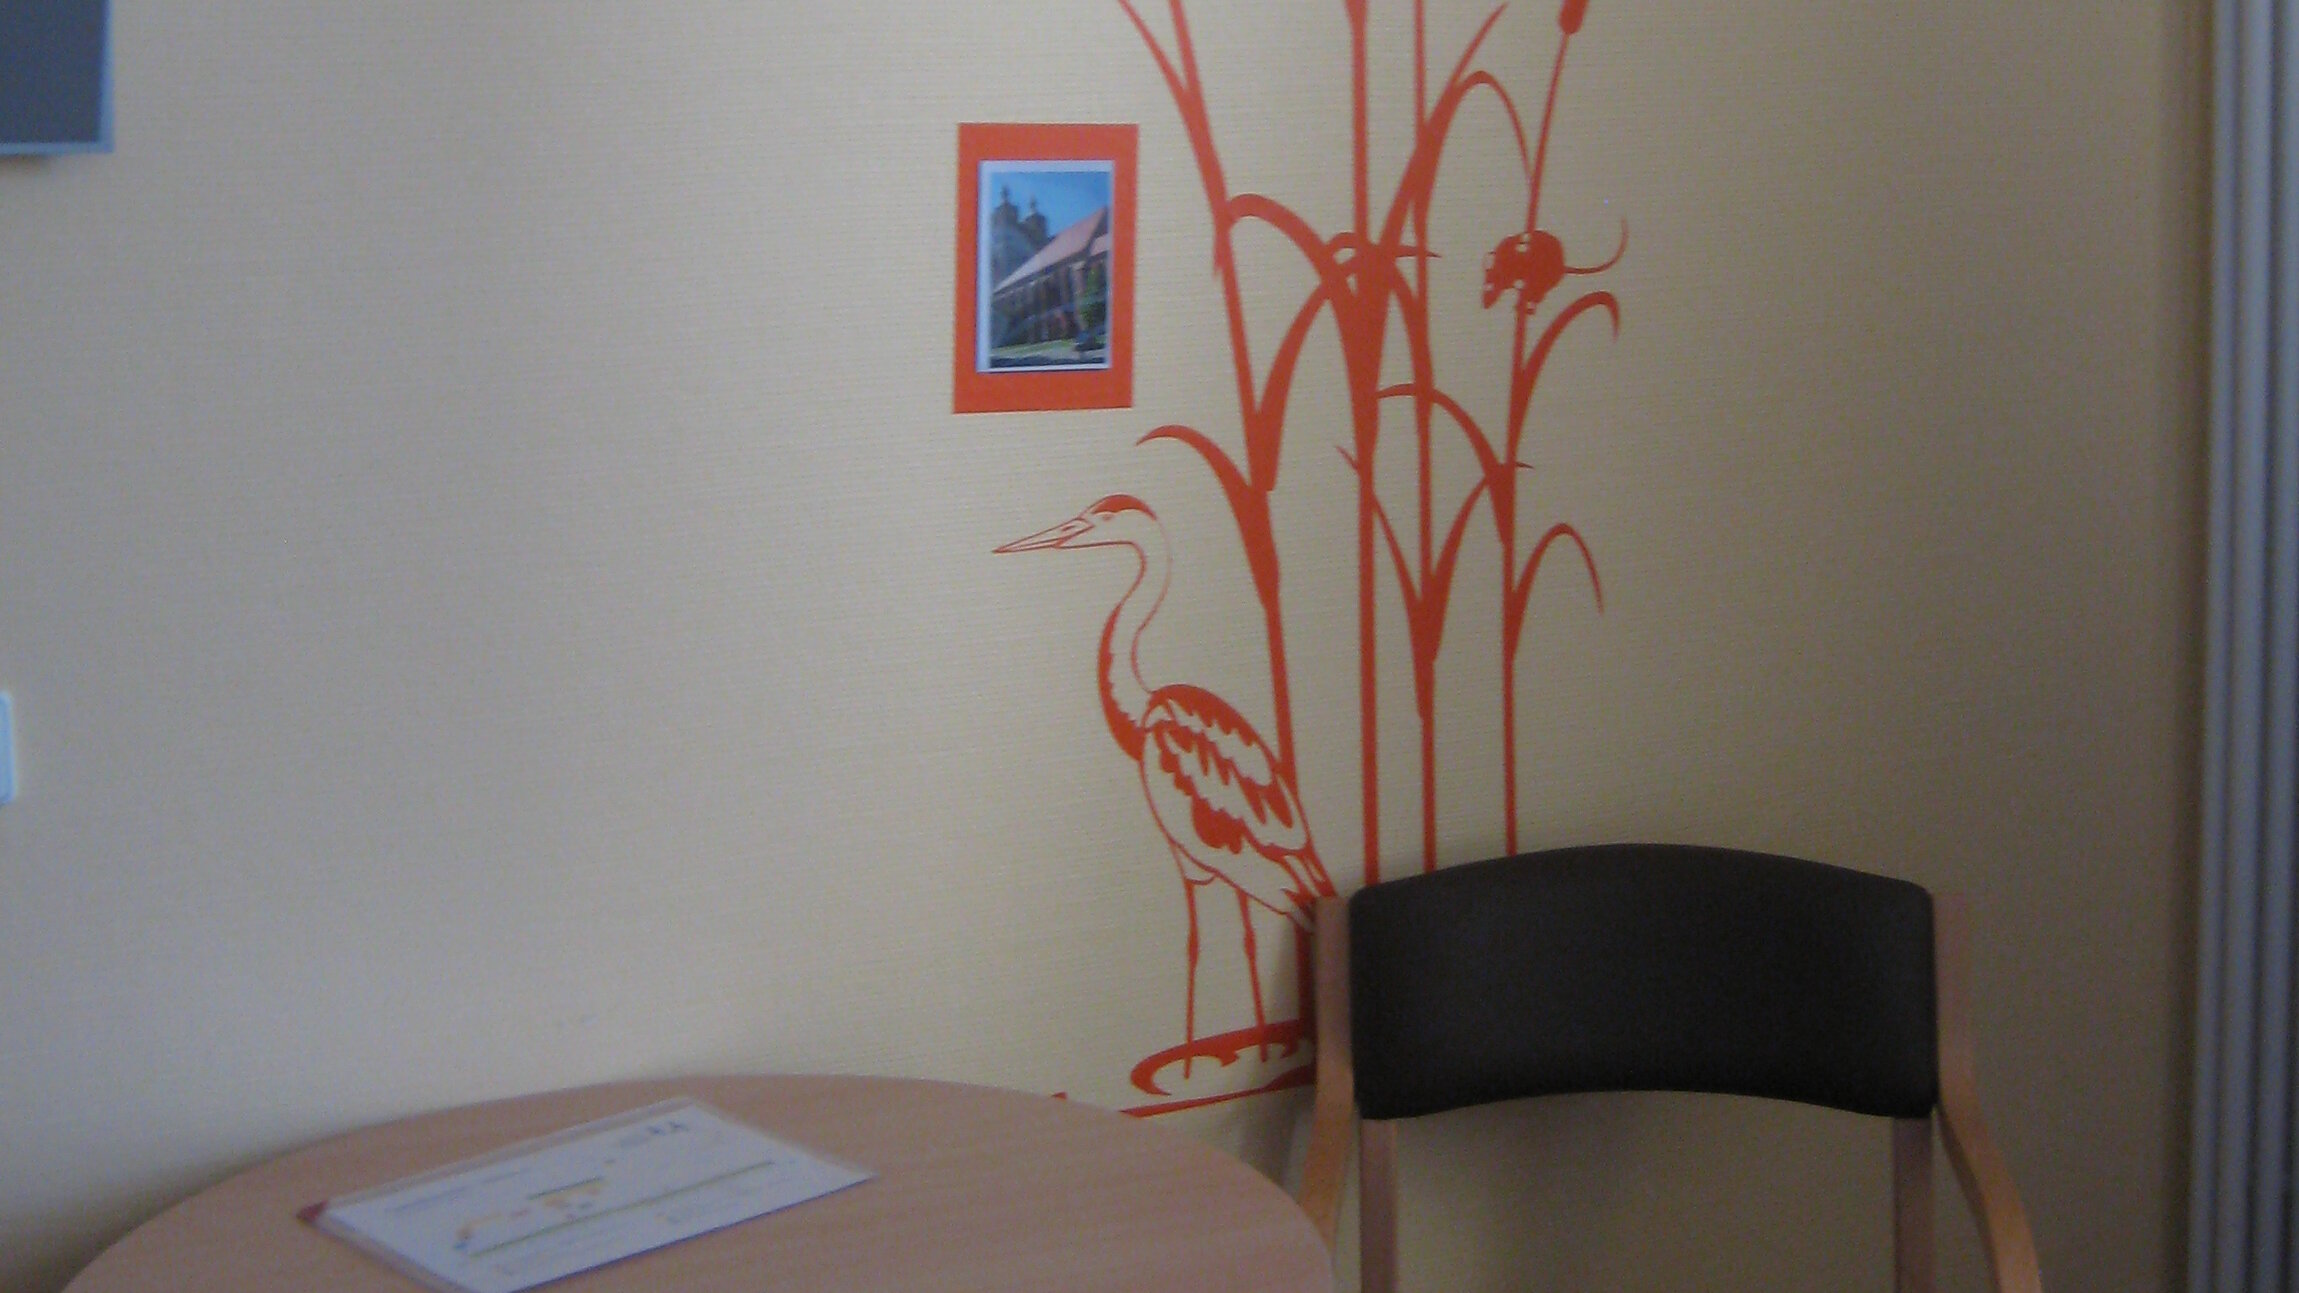 Blick in ein Patientenzimmer, dessen Wand durch eine Wandillustration und Fotos optisch gestaltet ist